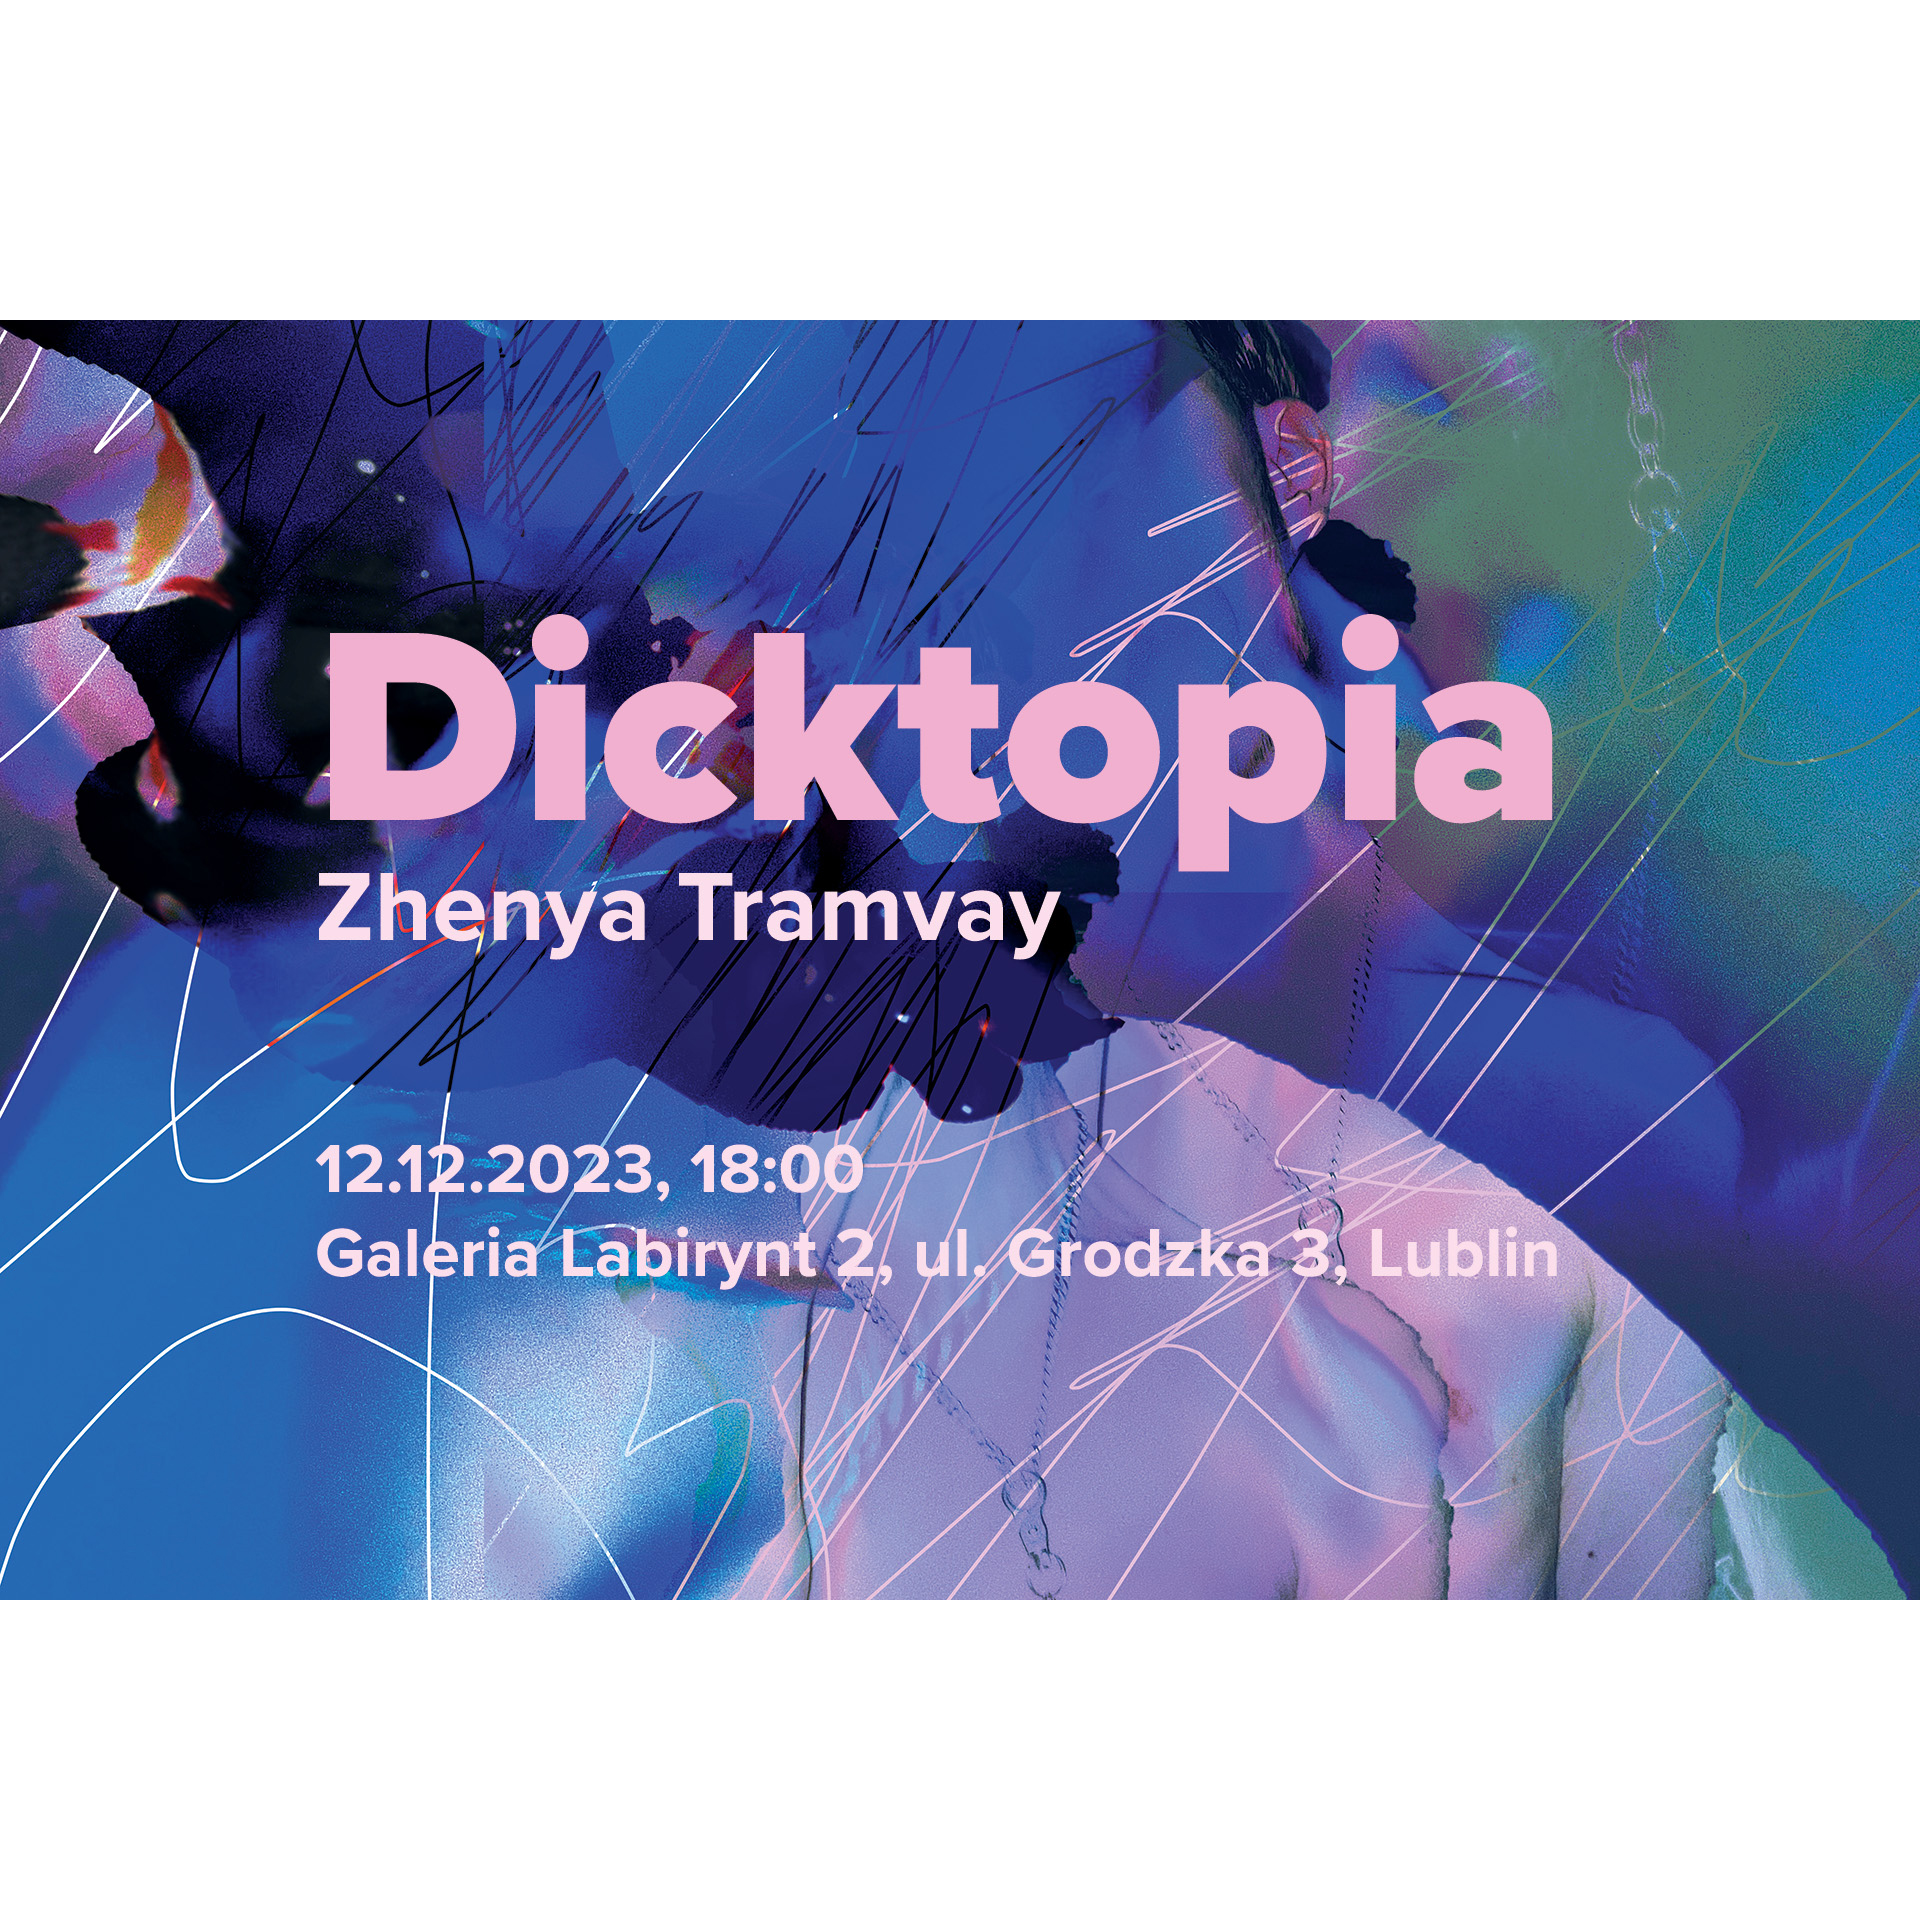 “Dicktopia” Zhenya Tramvay